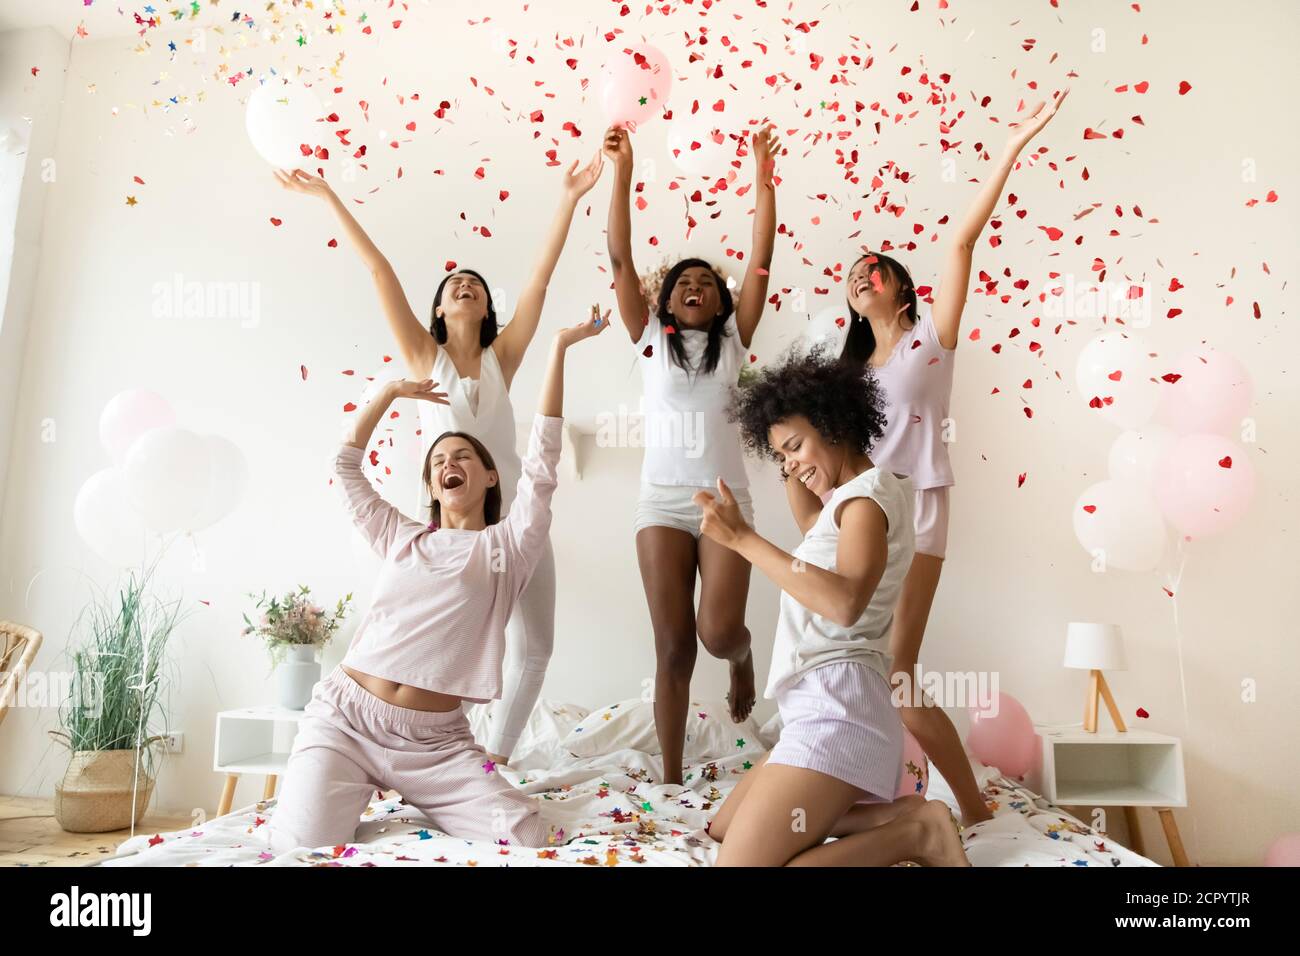 Les jeunes femmes festives multiraciales sont très joyeuses. Banque D'Images